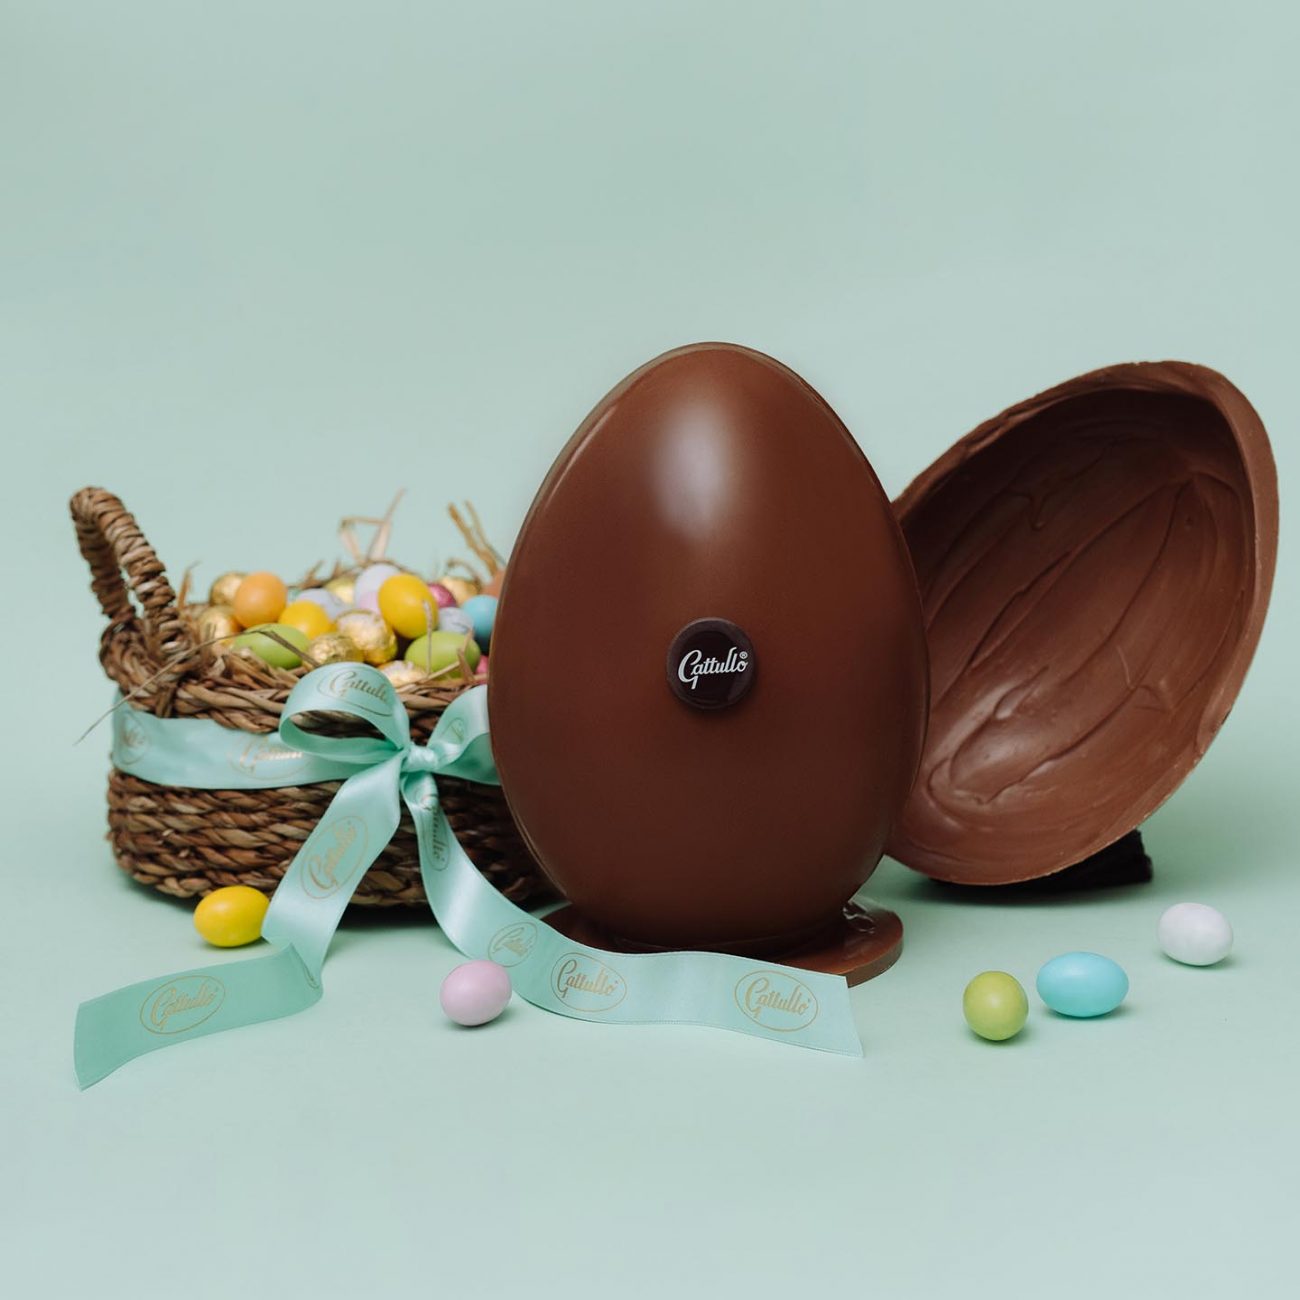 Uovo di Pasqua online e colombe tradizionali di Gattullo